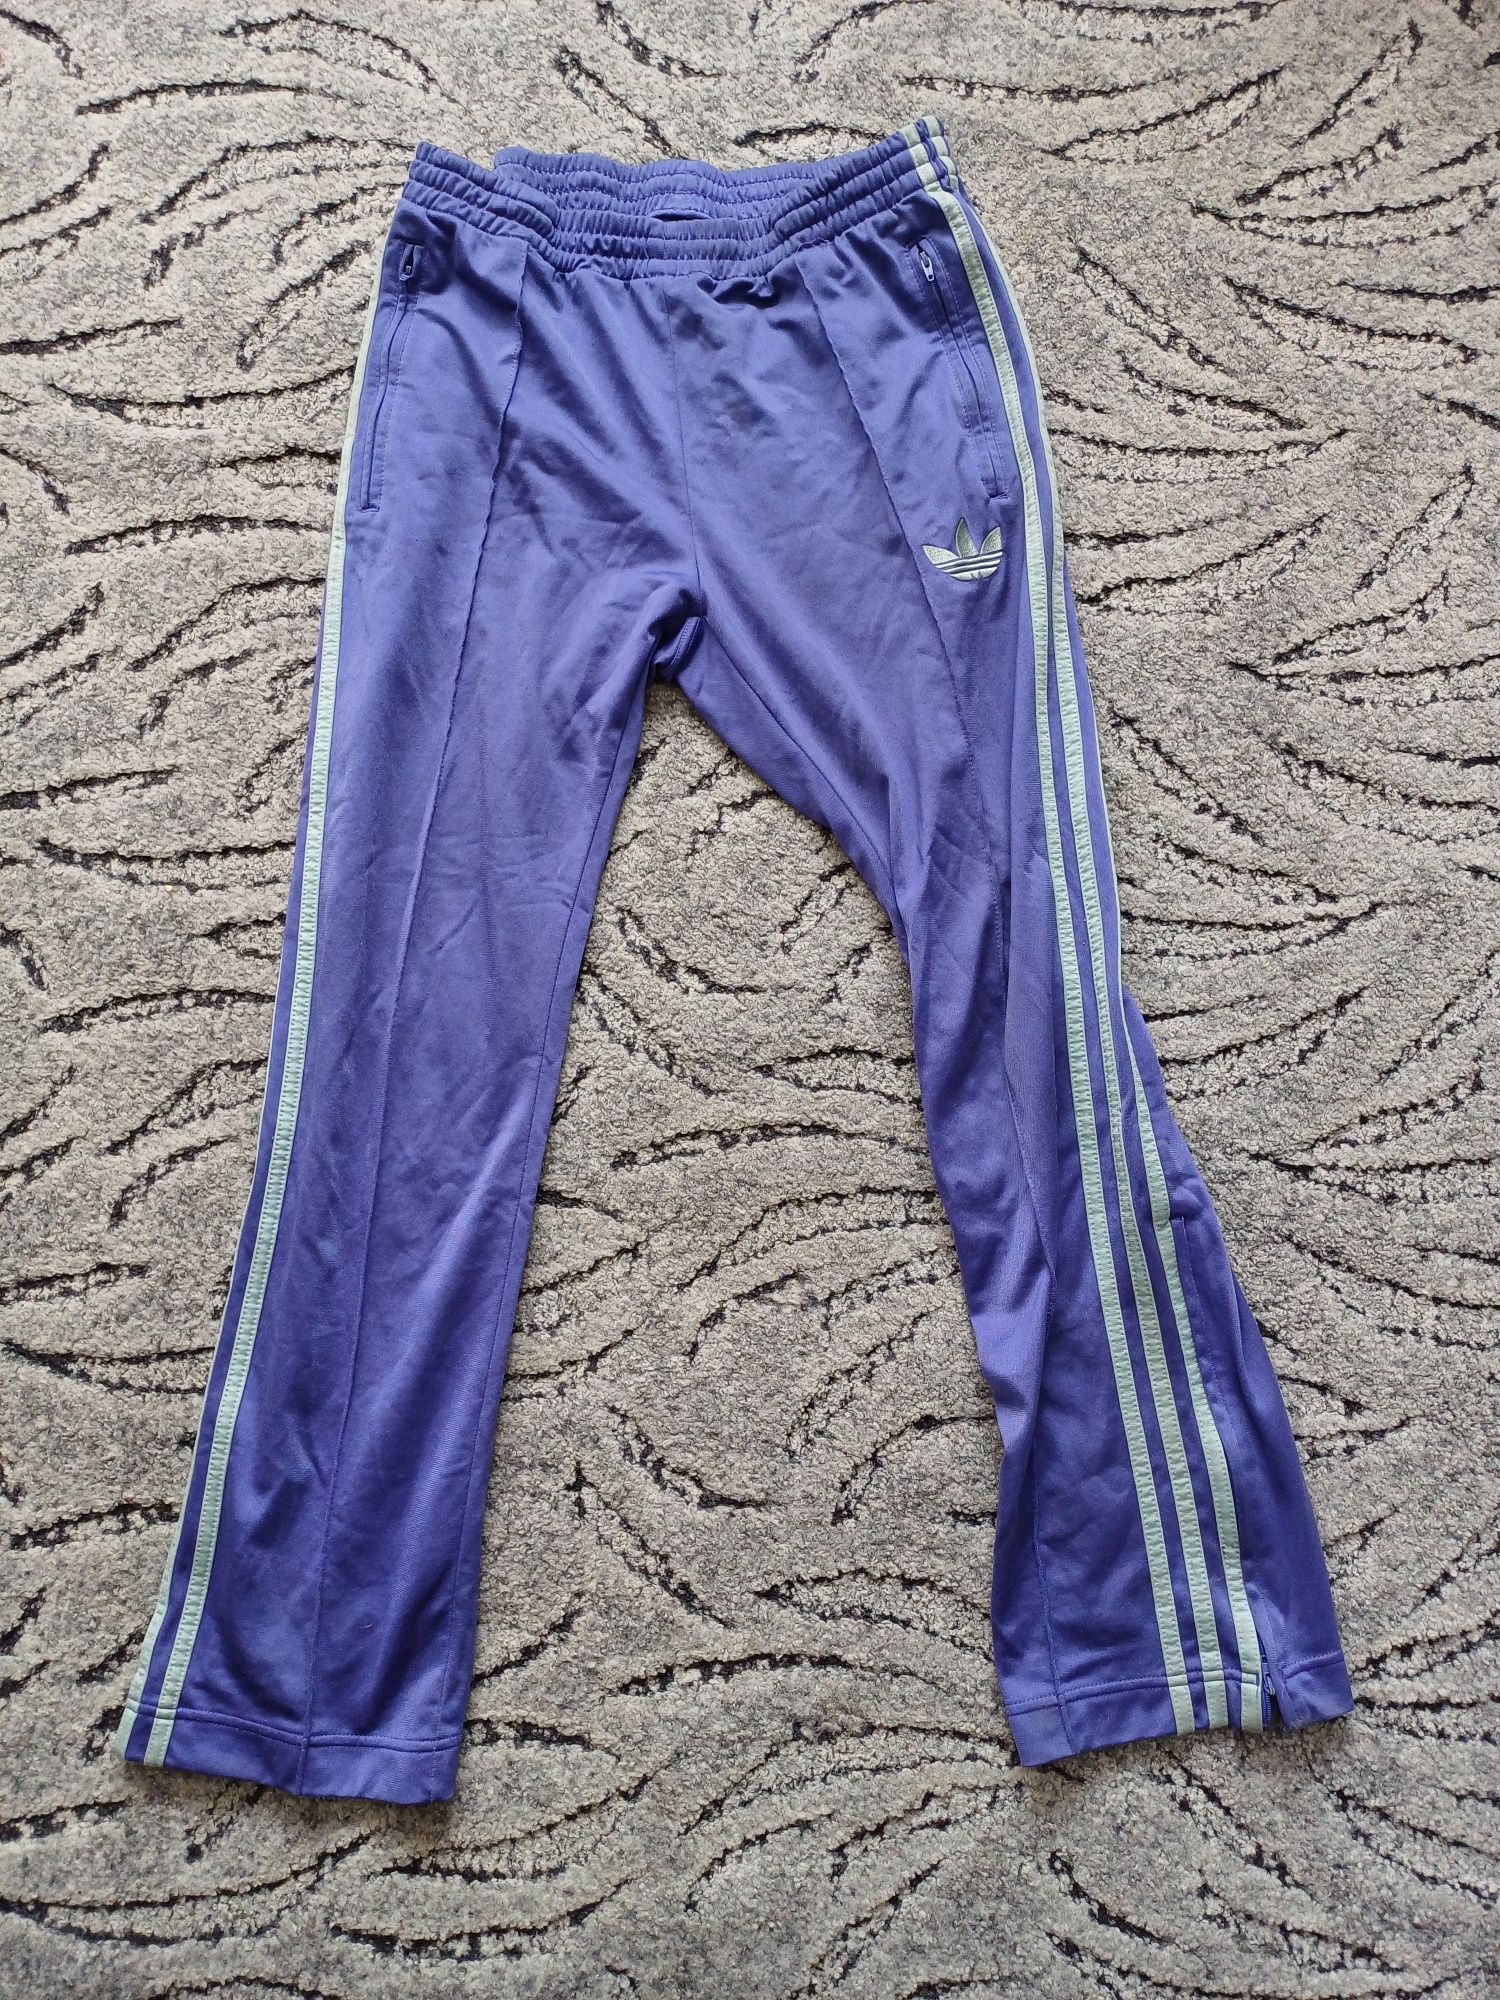 Dresy Adidas spodnie dresowe sportowe fioletowe S / M w stylu vintage